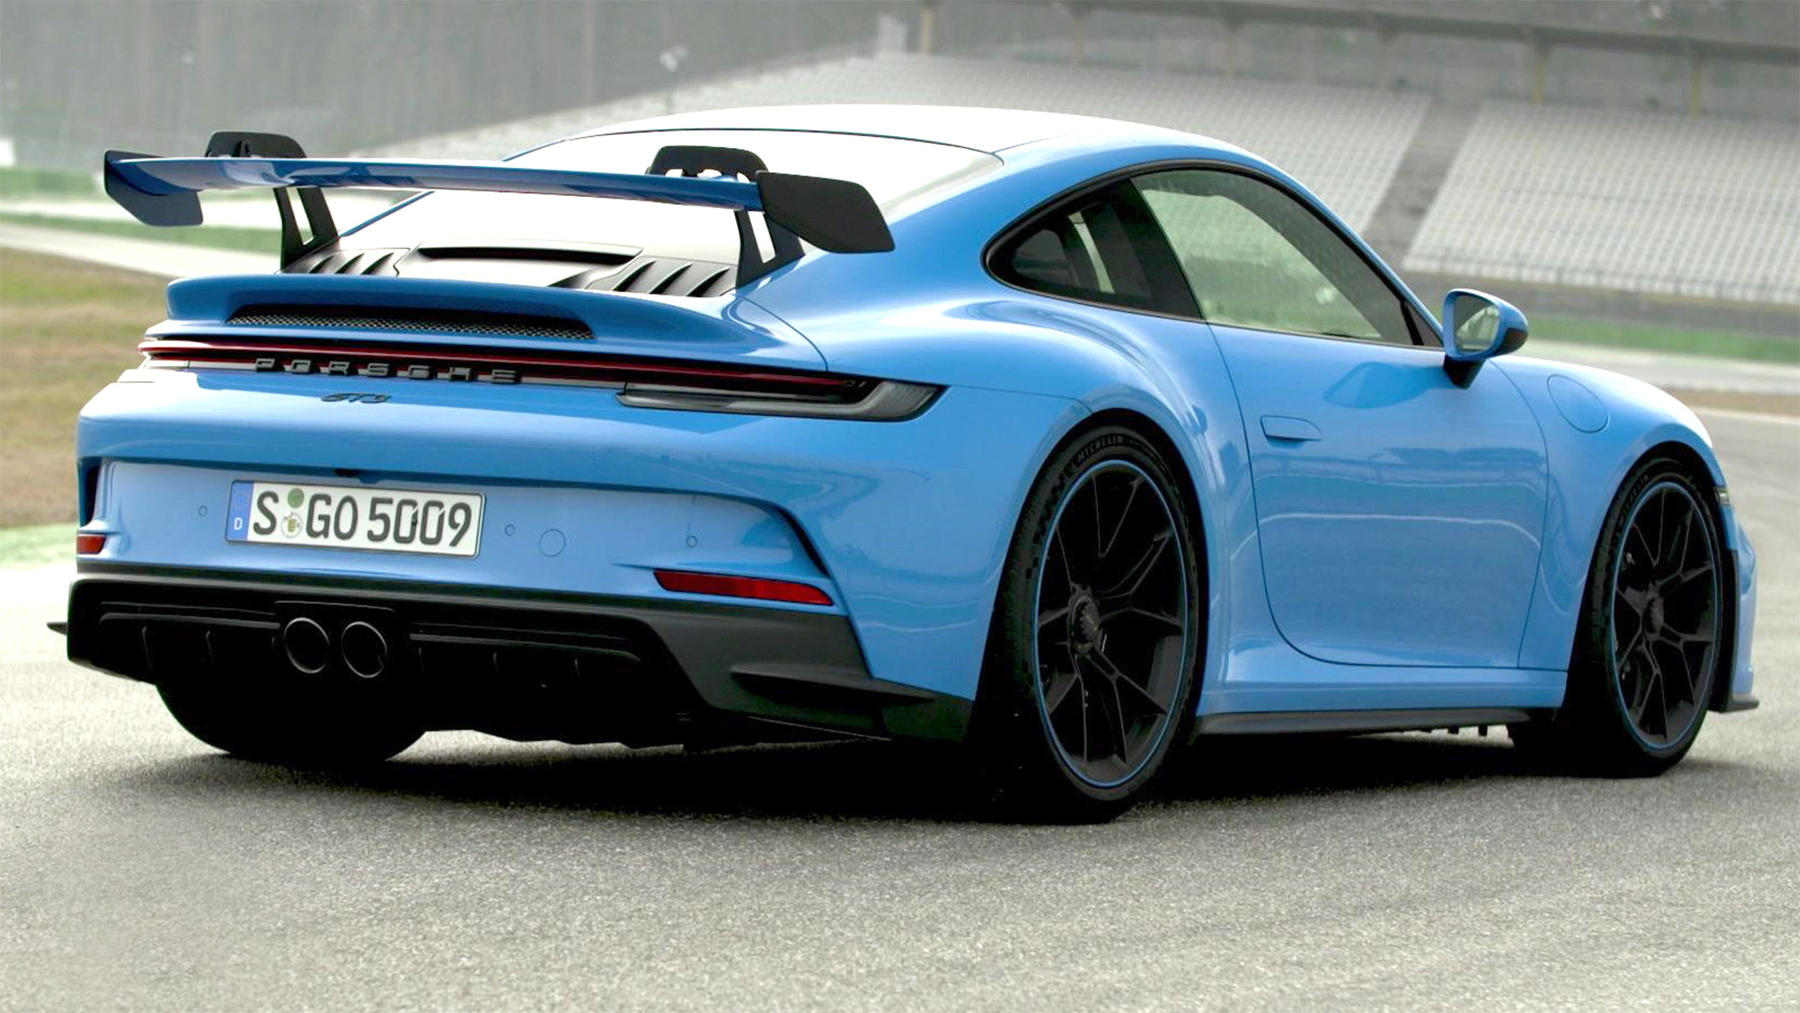 Thema u.a.: Der neue Porsche GT3